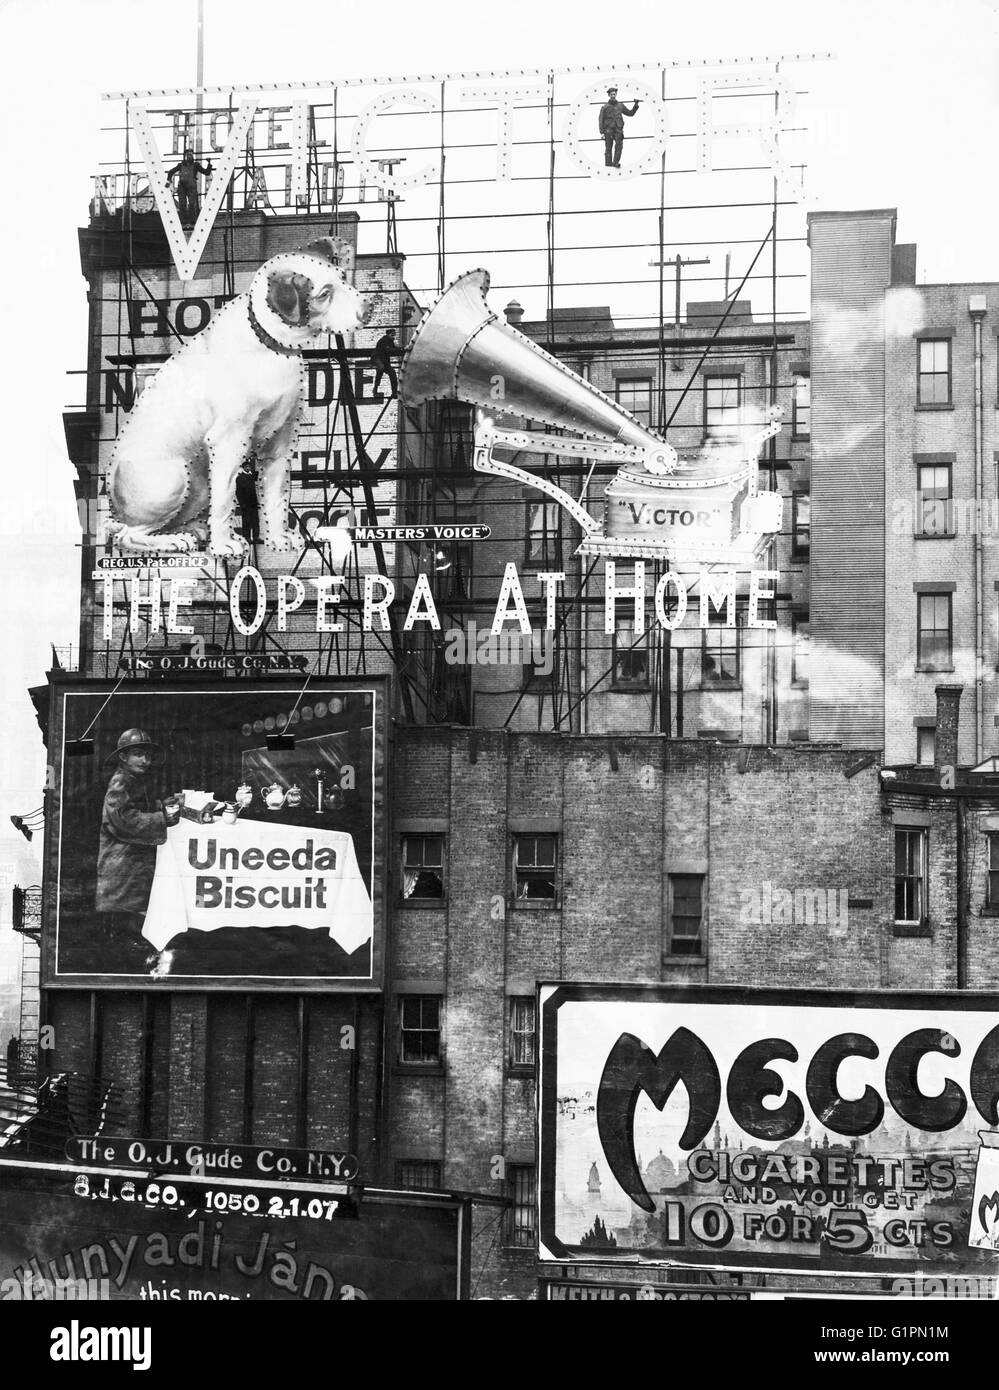 NEW YORK CITY: Zeichen, c1899.  Anzeigen und Plakaten, möglicherweise im Times Square in New York City. Fotografie, c1899. Stockfoto